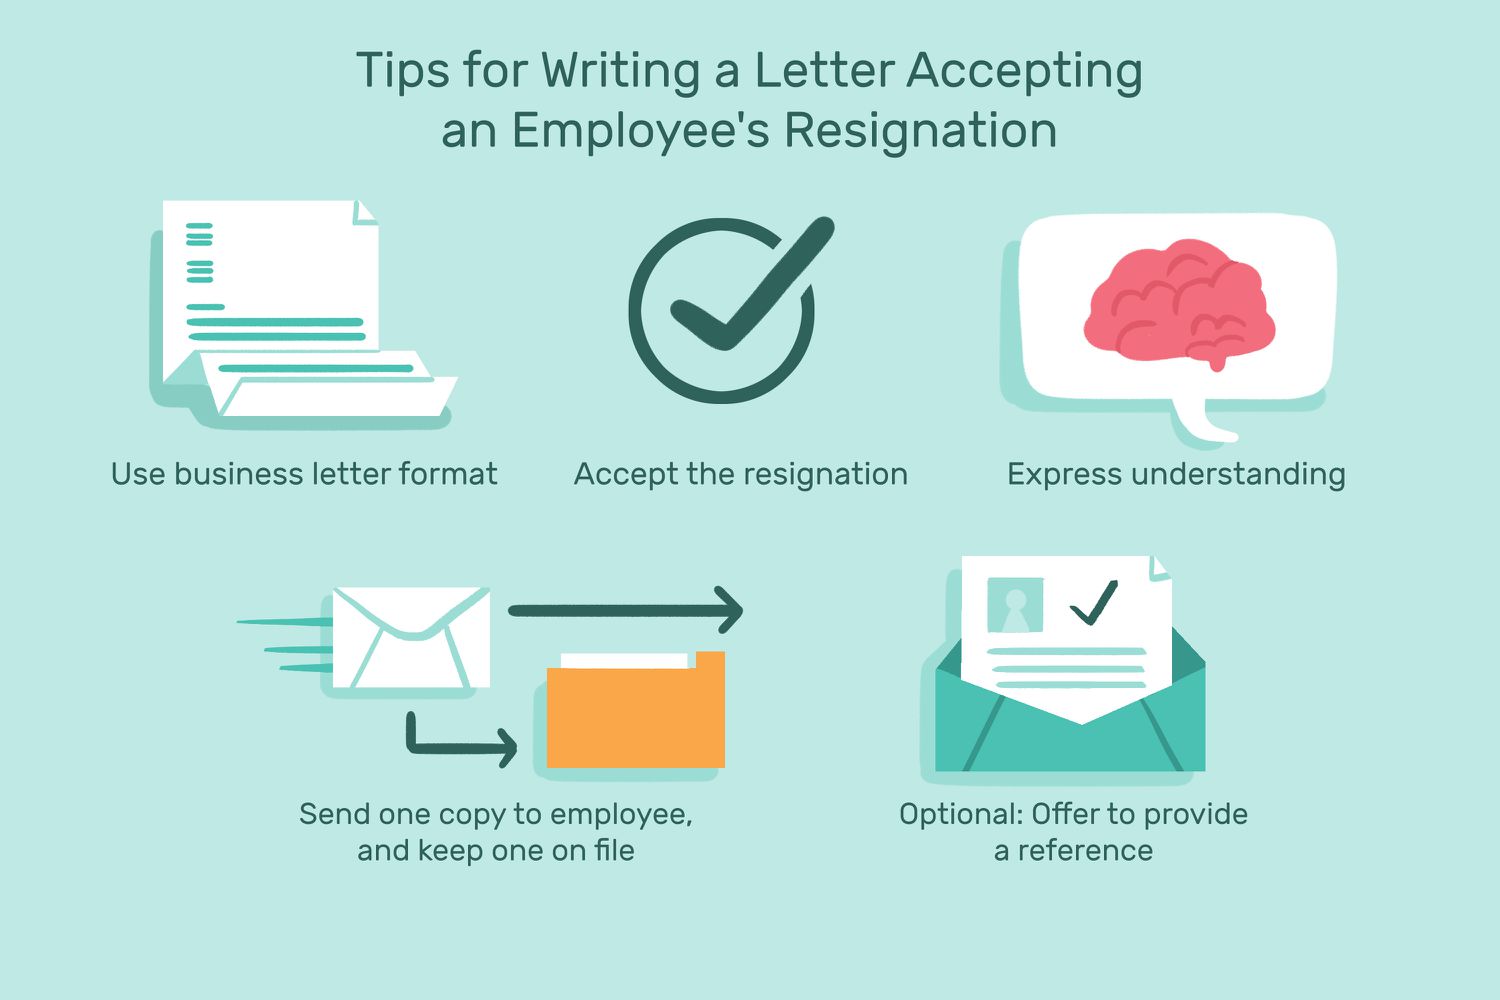 这个例子包括了写一封接受员工辞职信的技巧，比如“使用商务信函的格式”，“接受辞呈”，“表达理解”，“发给员工一份，并保留一份存档”，以及“可选:提供推荐信”。